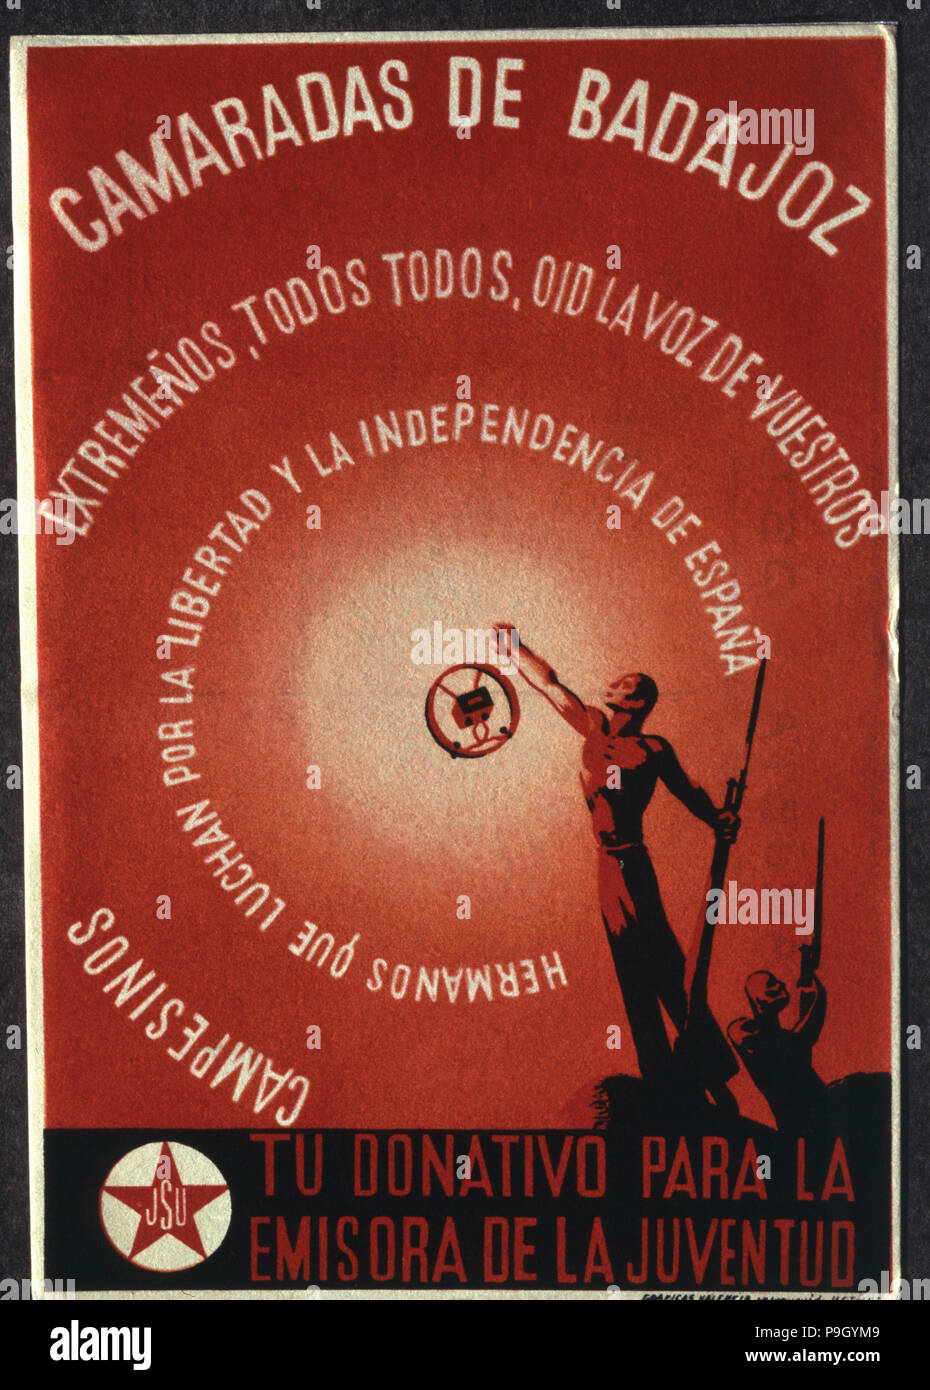 Guerre civile espagnole (1936 - 1939), 'camarades' de Badajoz, affiche publicitaire de la station de radio '… Banque D'Images